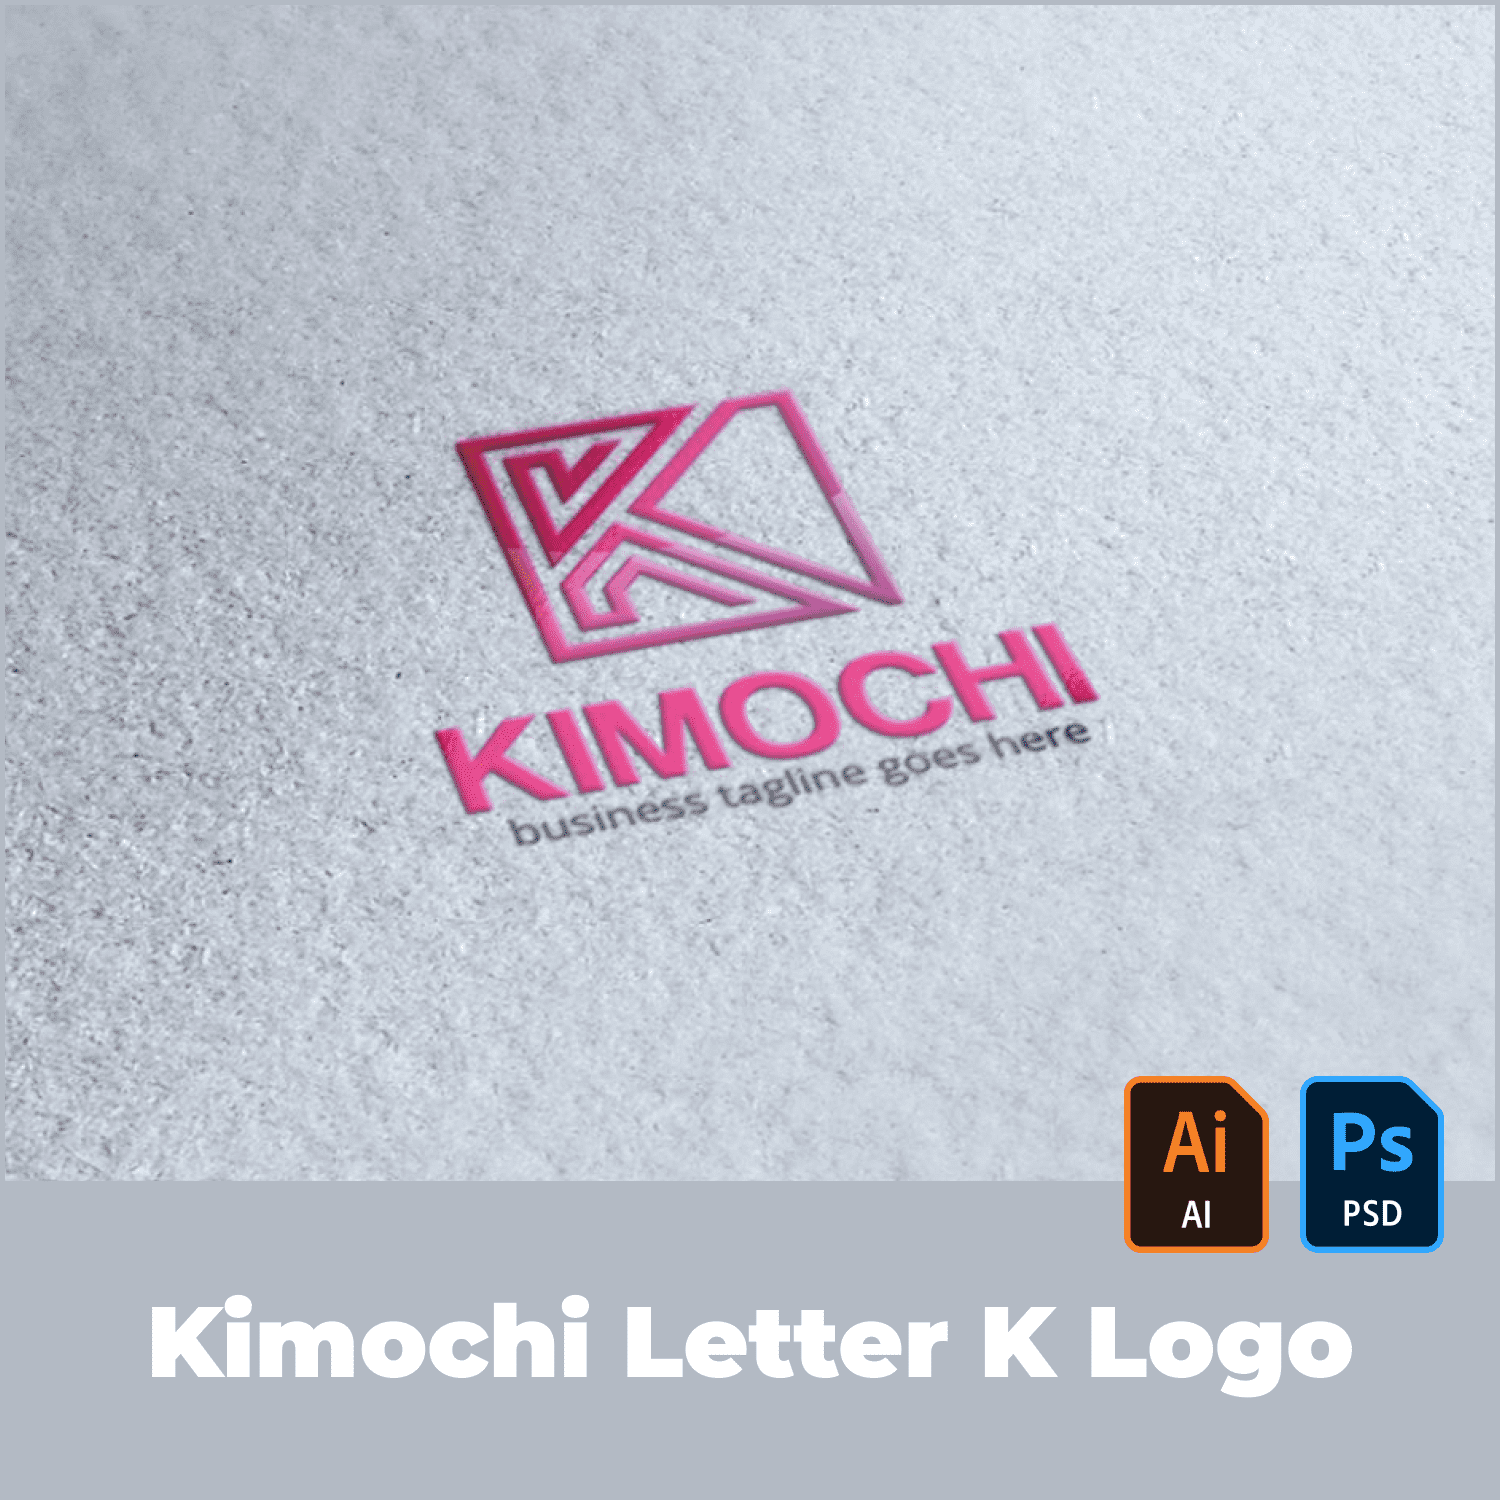 Kimochi Letter K Logo.